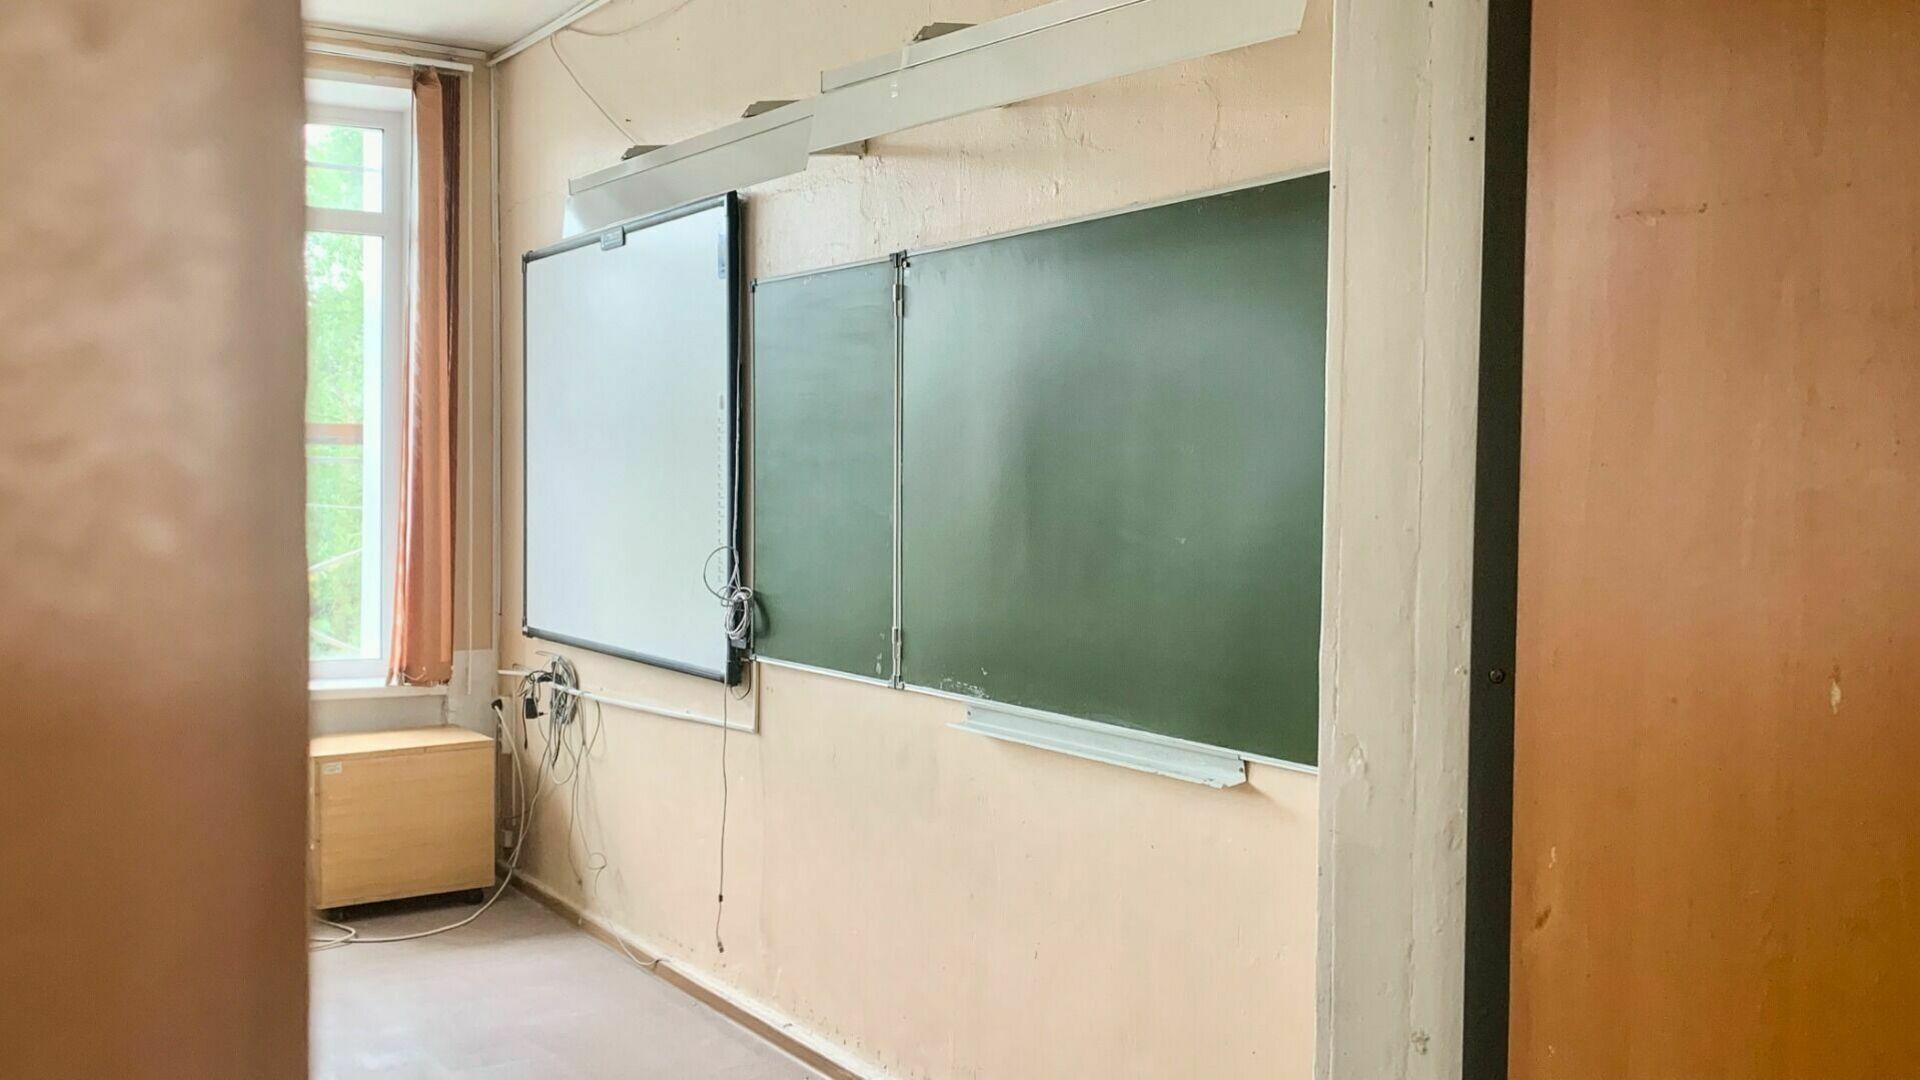 Директора  накажут за рухнувшую шведскую стенку на ученицу в Волжском